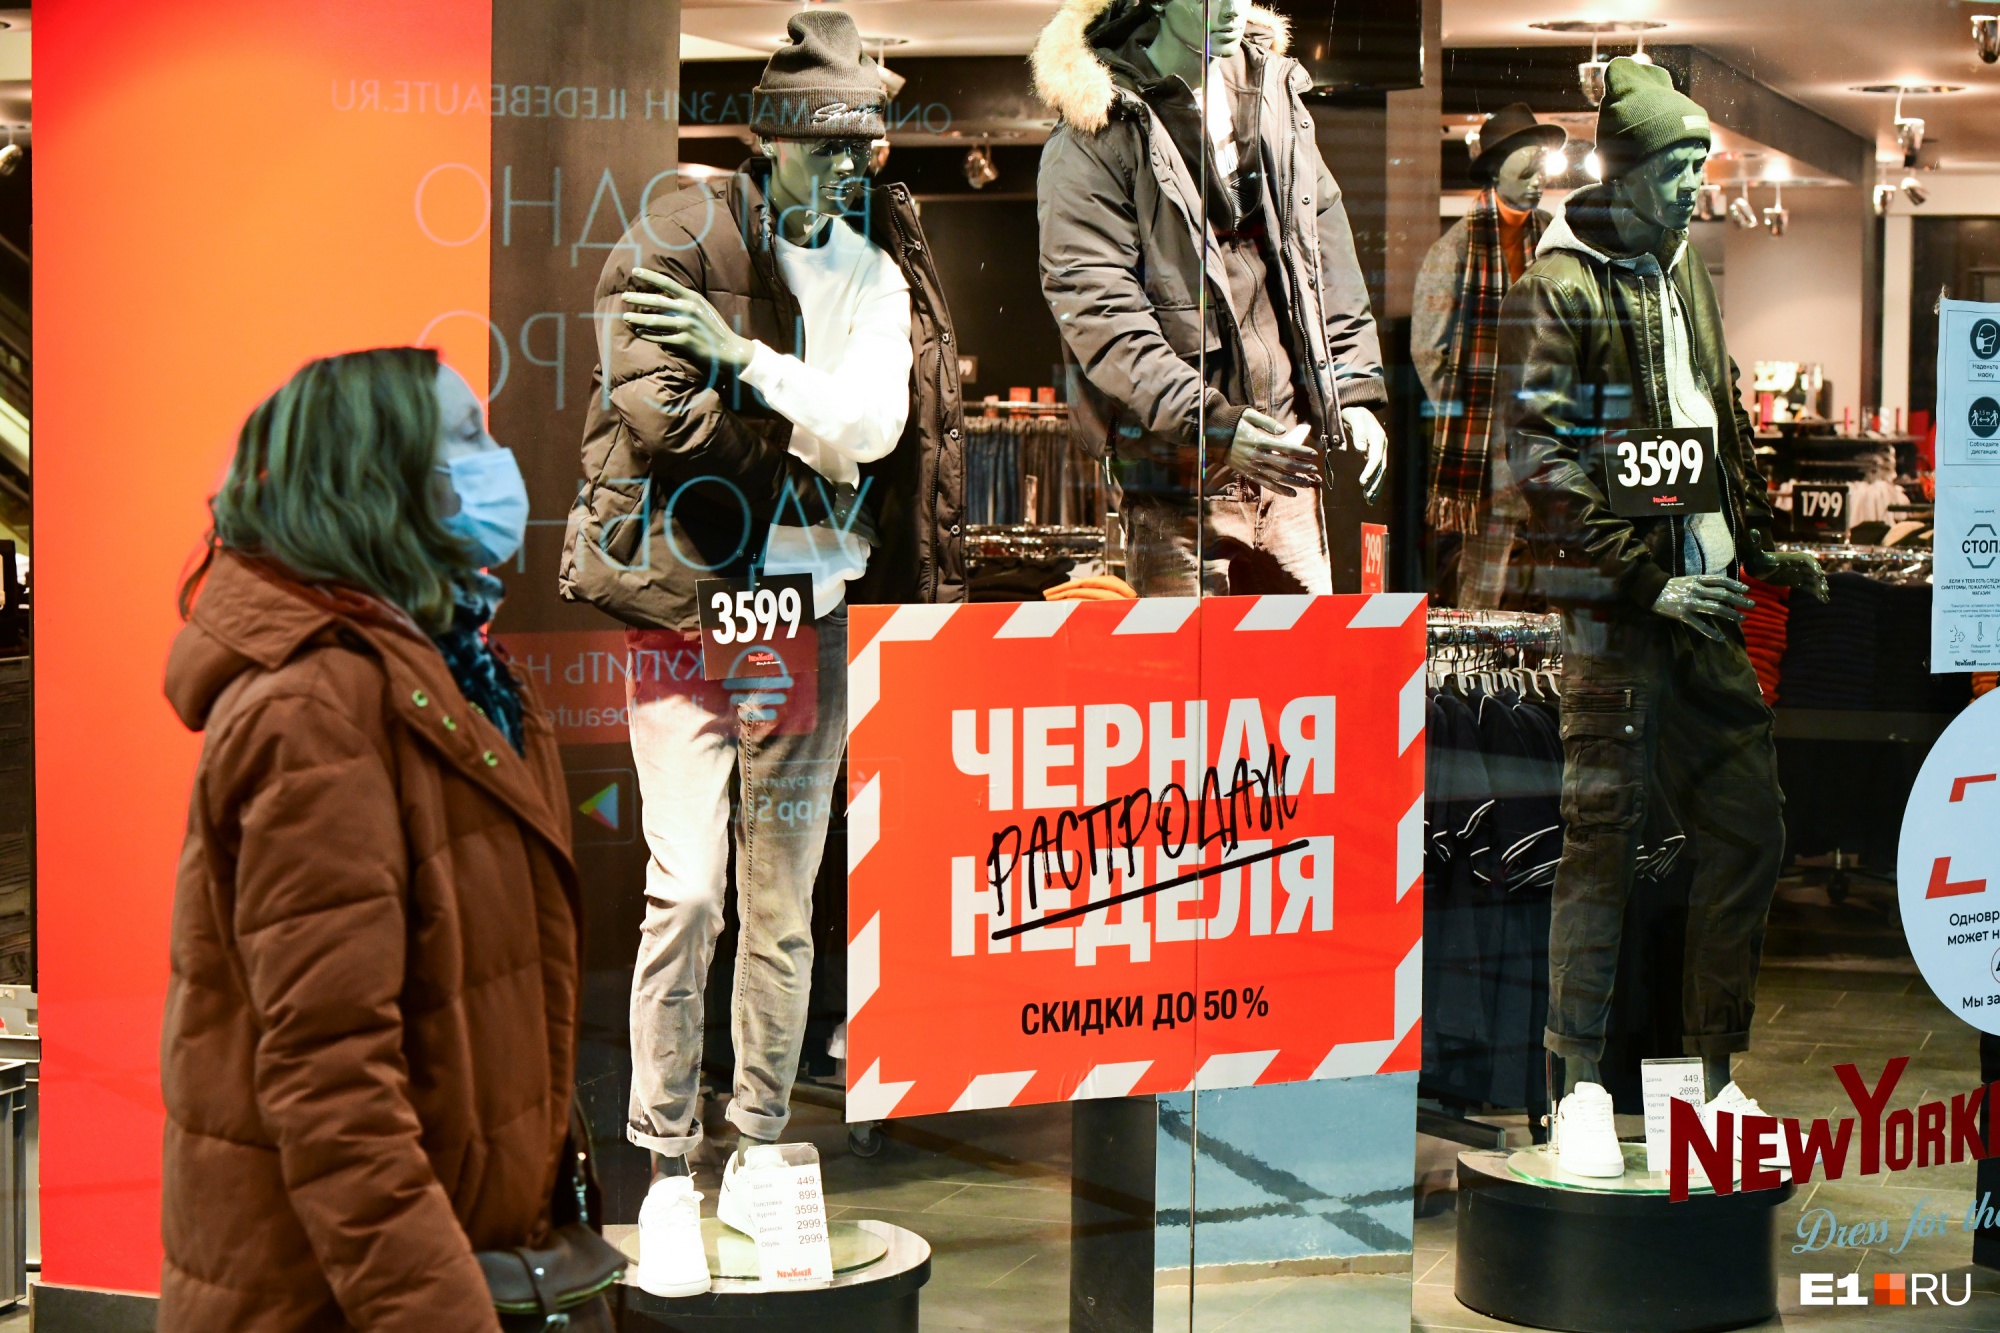 Скидок много, а денег нет: «черная пятница» в Екатеринбурге снова провалилась